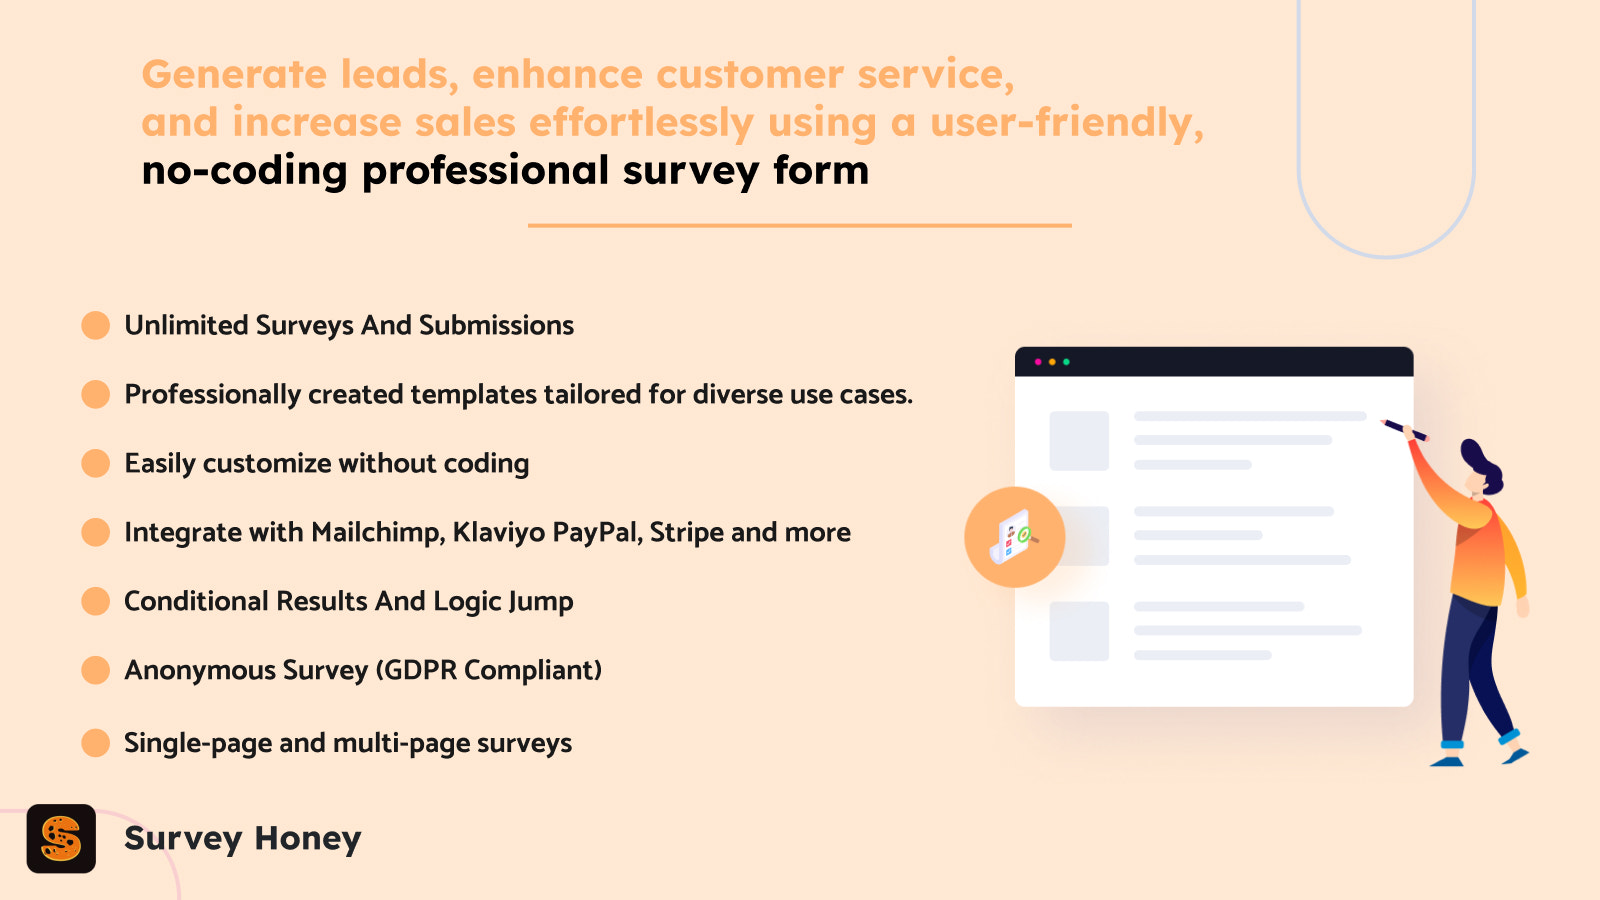 Shopify Survey Honey应用无需编码的专业调查表单